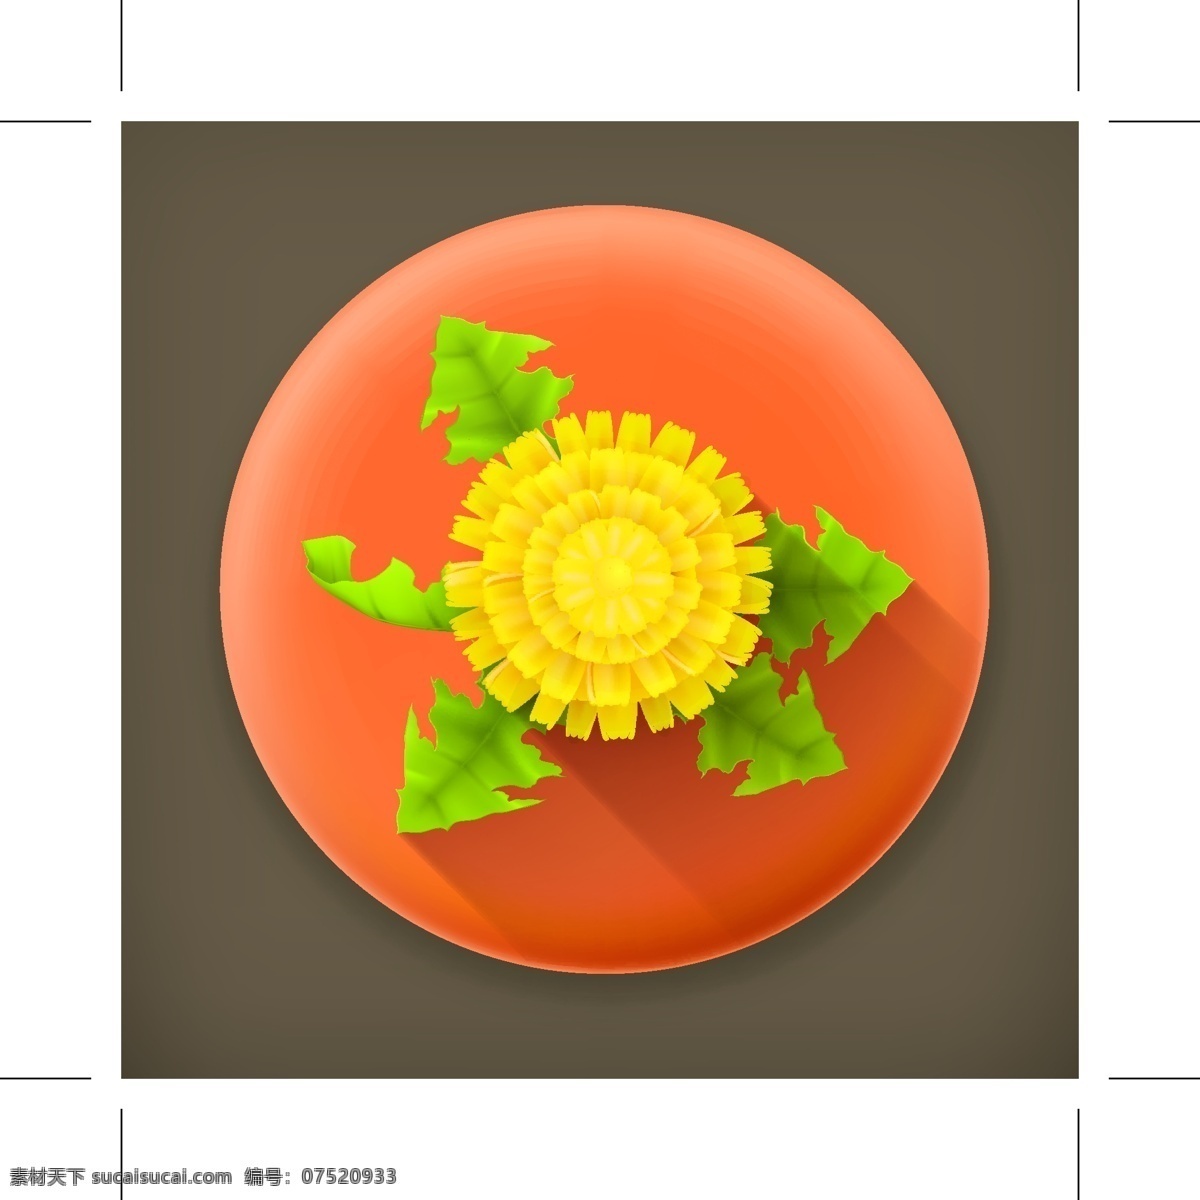 鲜花 菊花 icon 图标 logo vi 标志 花朵 小标志 小图标 矢量图 其他矢量图